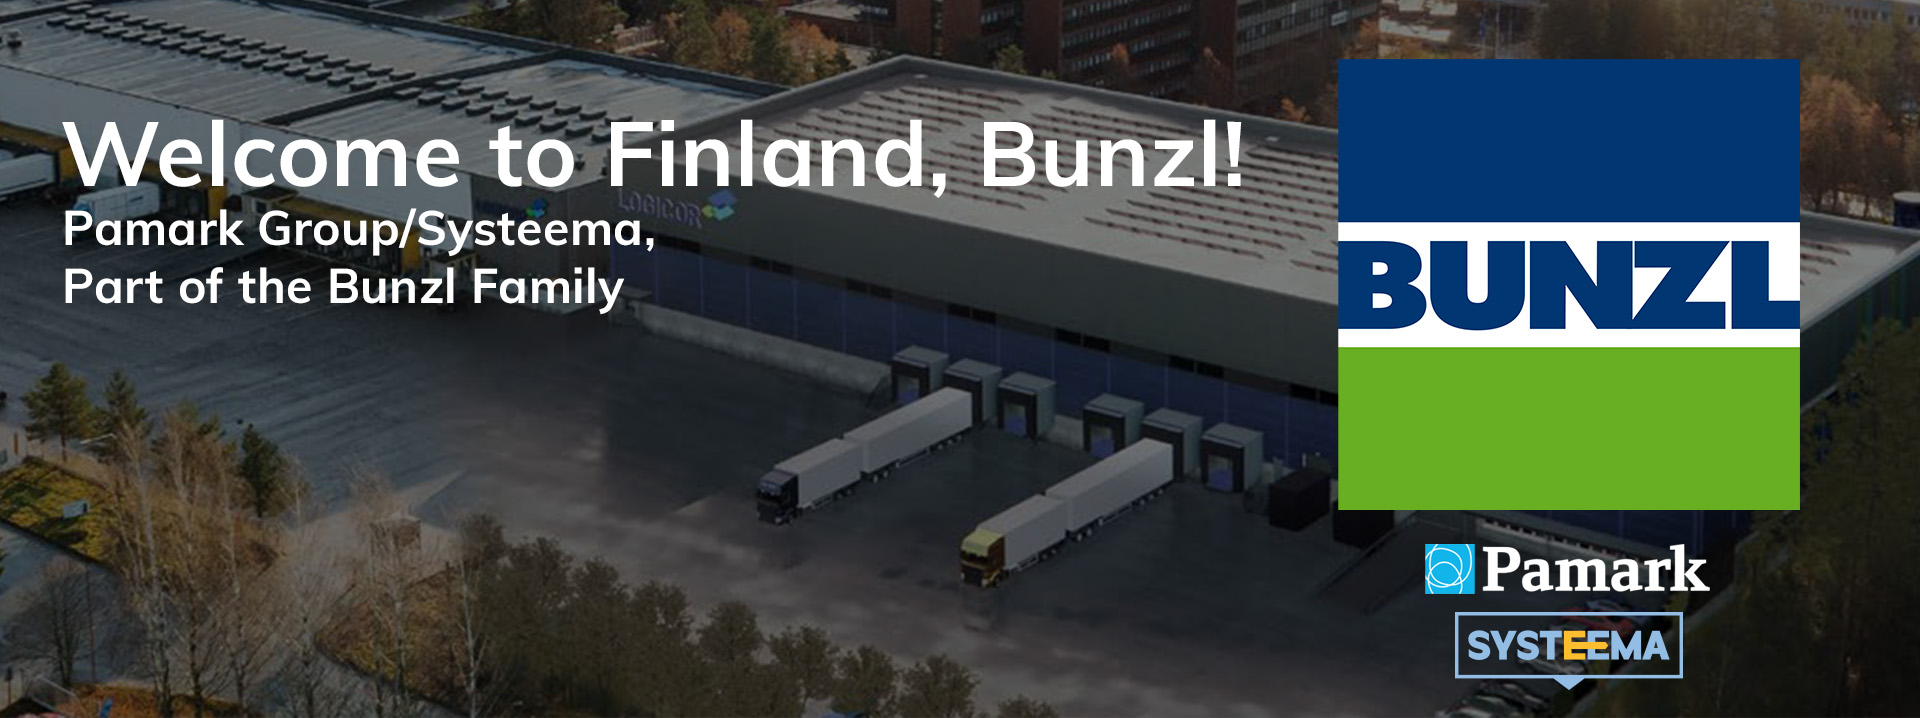 Bunzl Holding Nordic A/S ostaa Pamark Business Oy:n ja Suomi on 33. maa, johon Bunzl laajentaa toimintaansa 